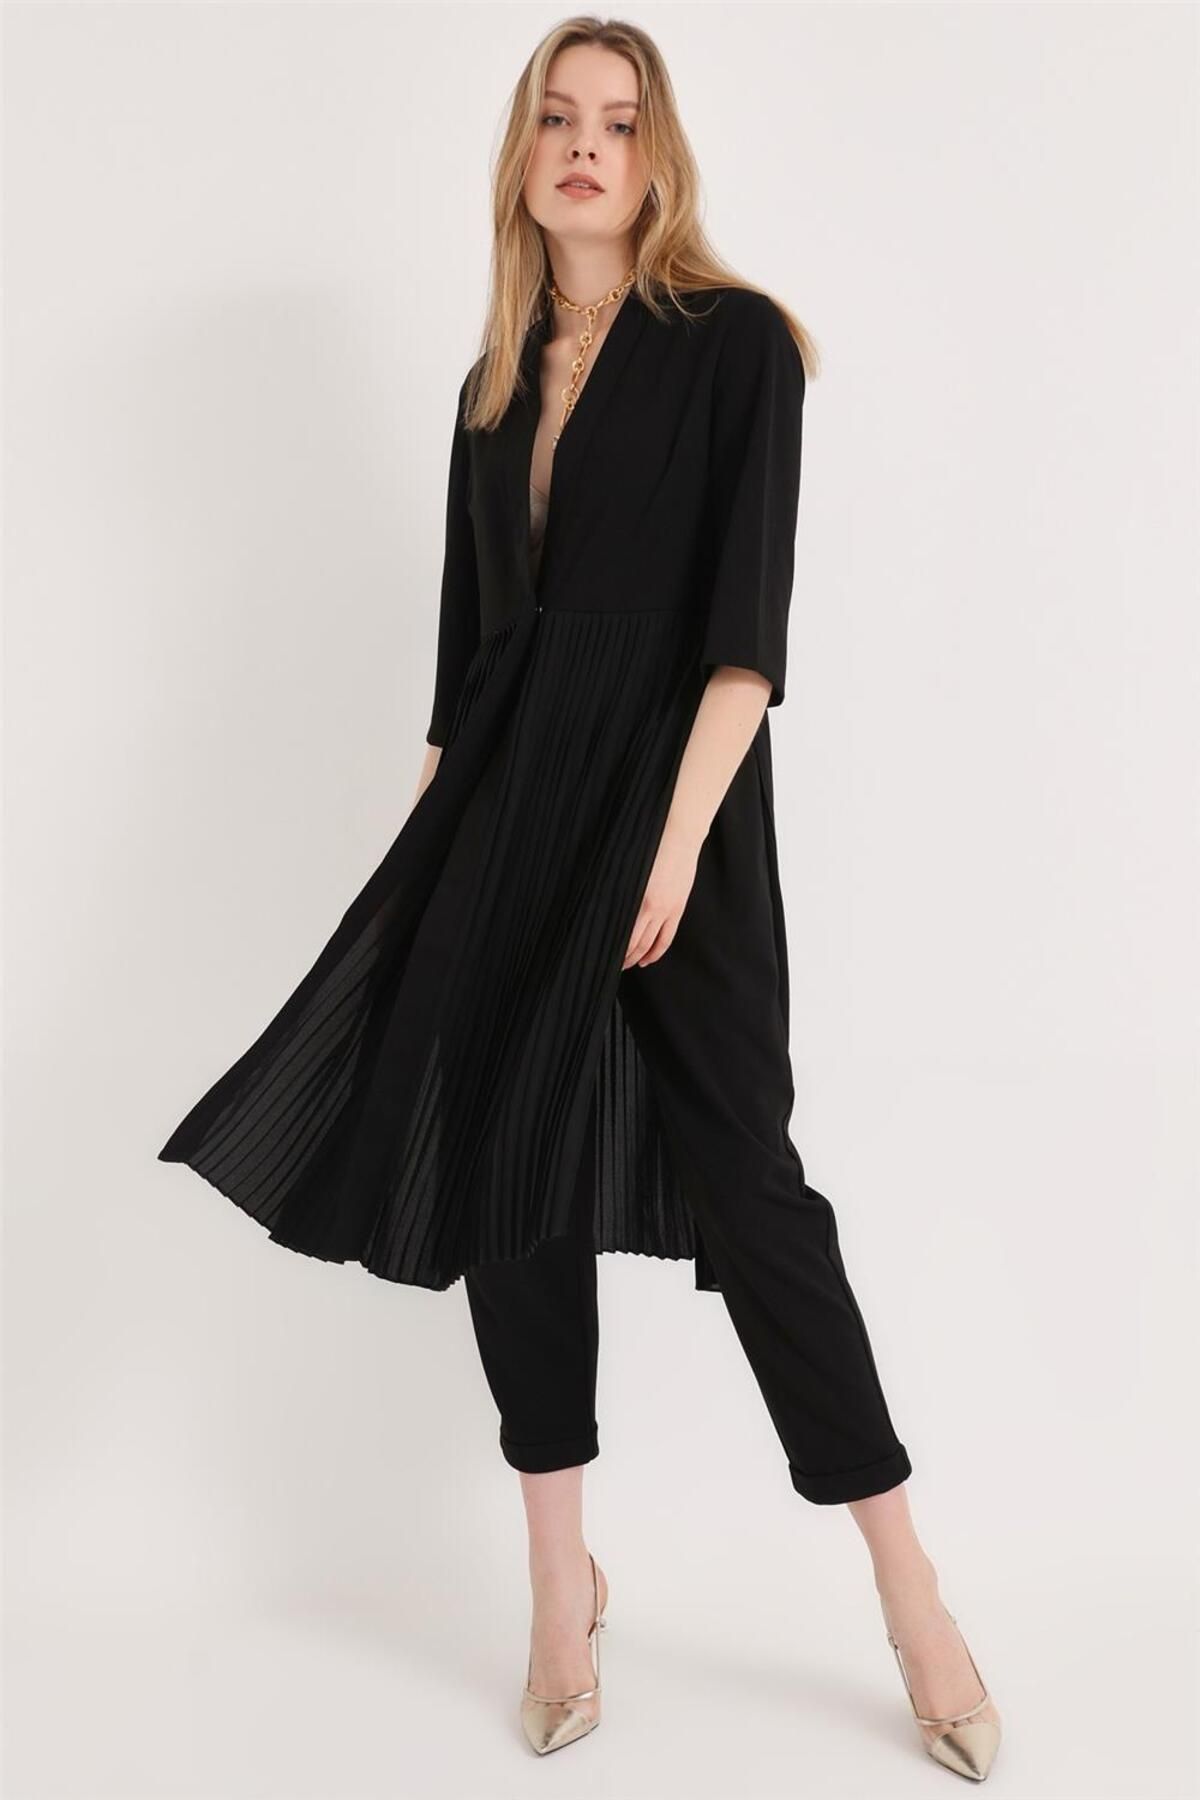 Home Store Elbise Bel Alti Pliseli Önde Etk Çitçili Derin Ve Yaka - Siyah